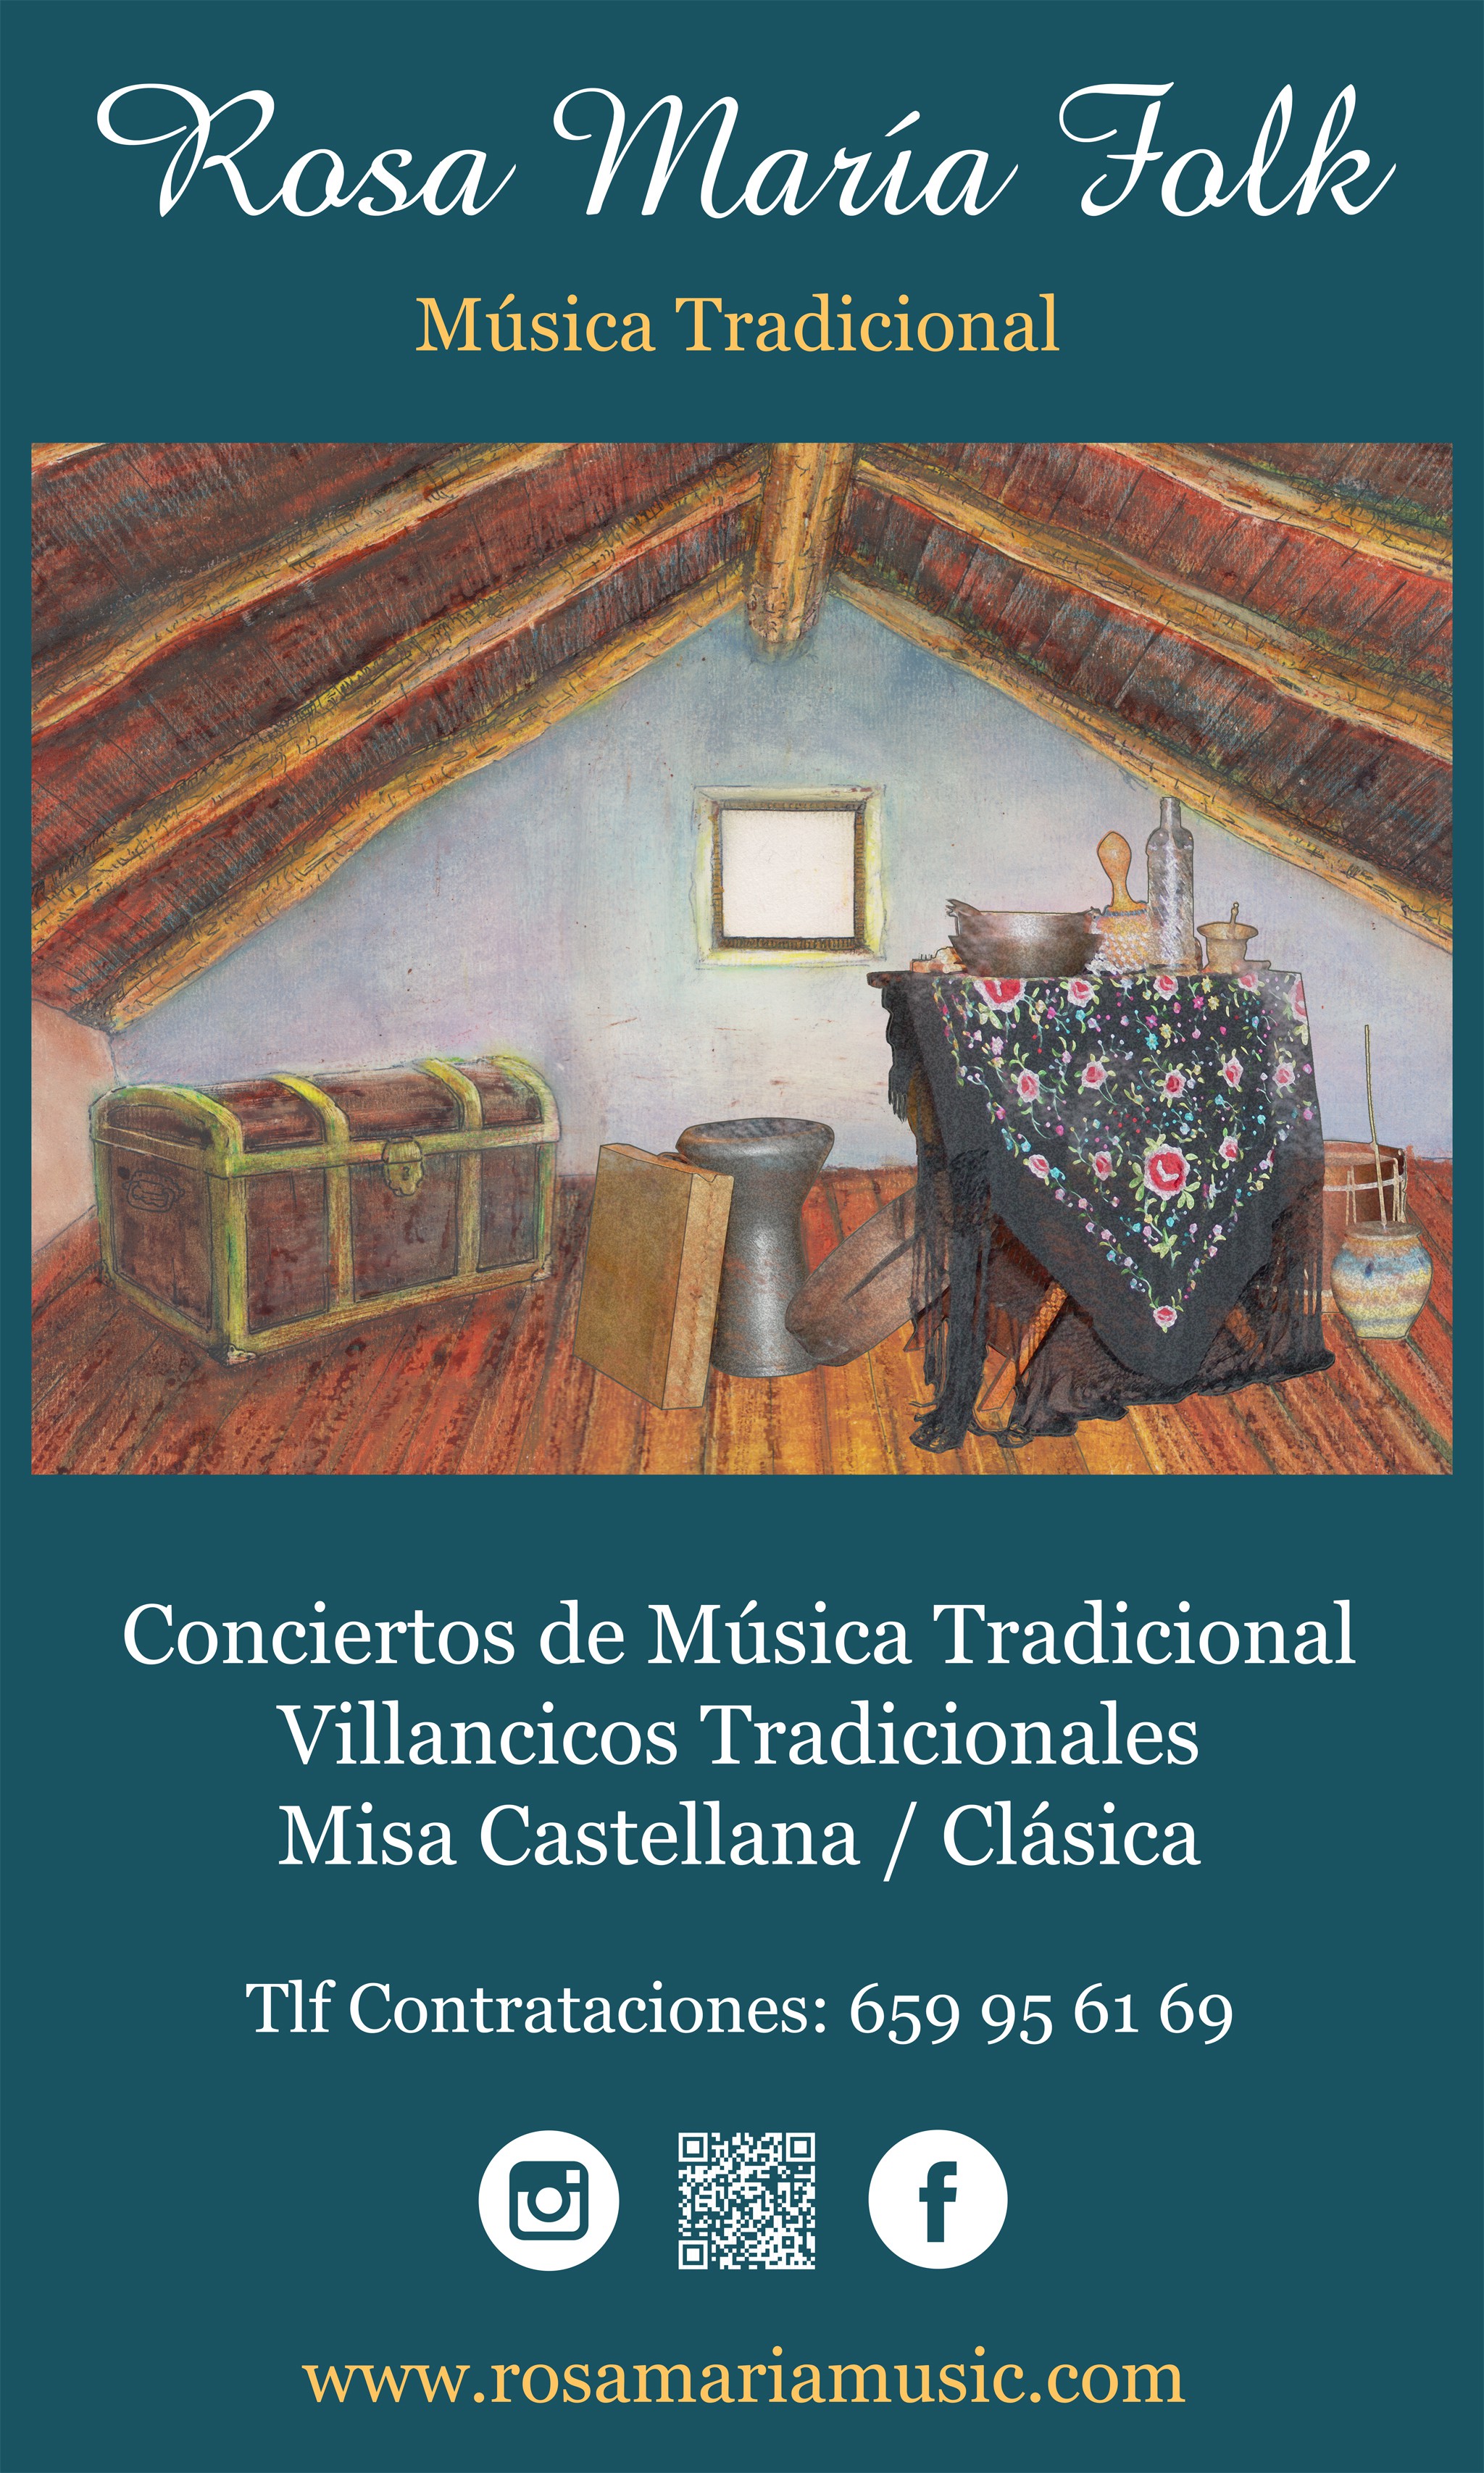 Concierto de Música Tradicional en Garcibuey (Salamanca)